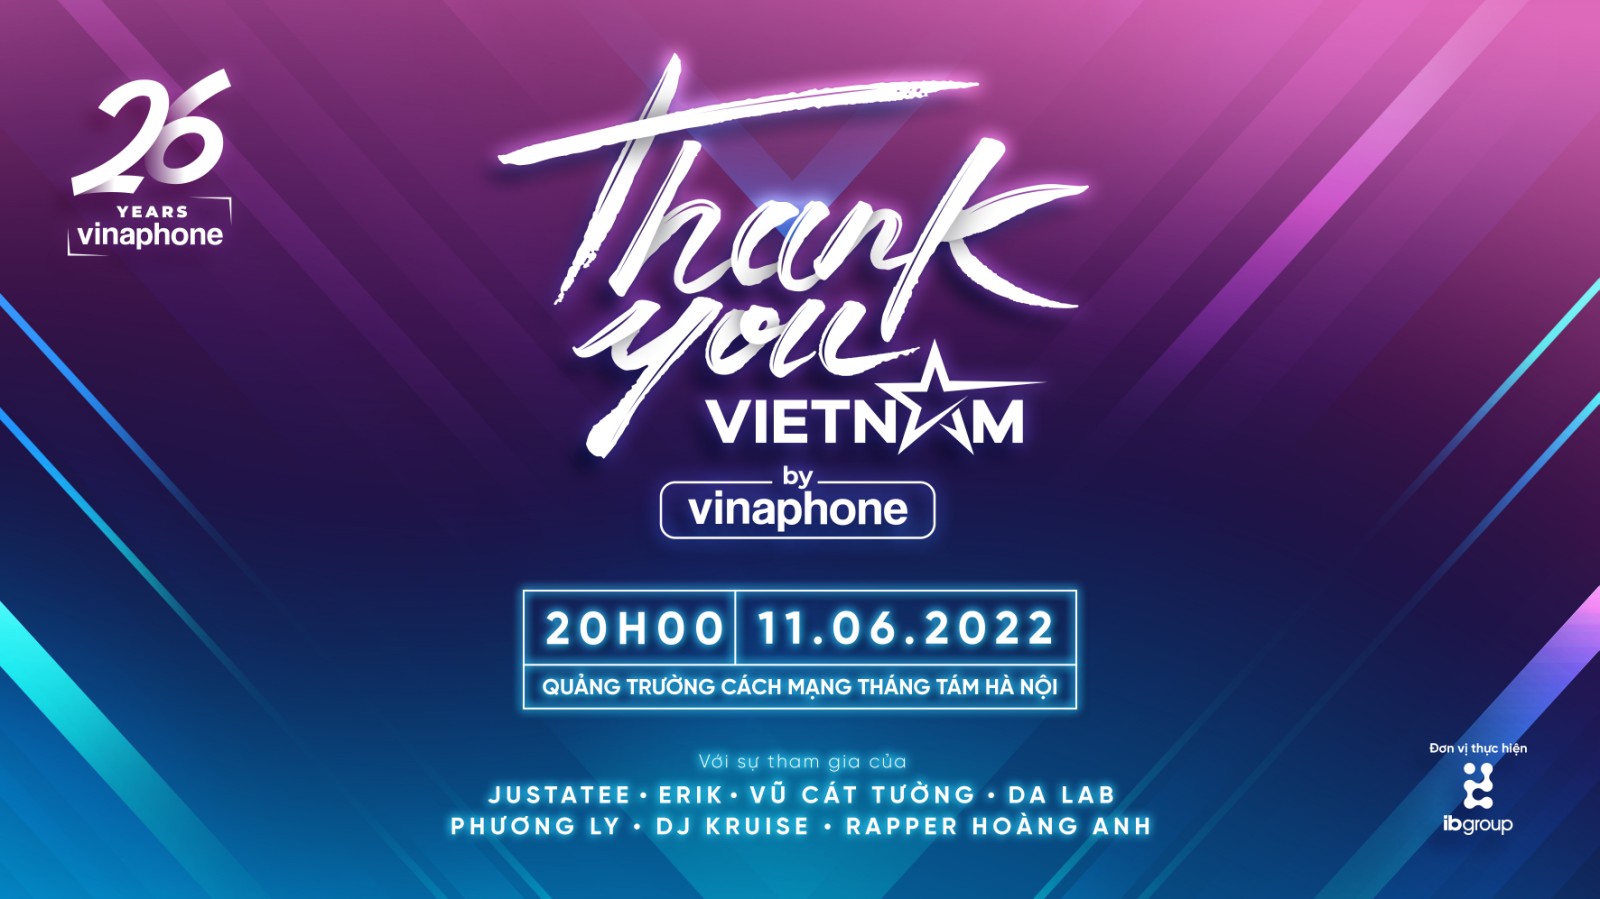 VinaPhone tổ chức Đại nhạc hội "Thank you, Vietnam"